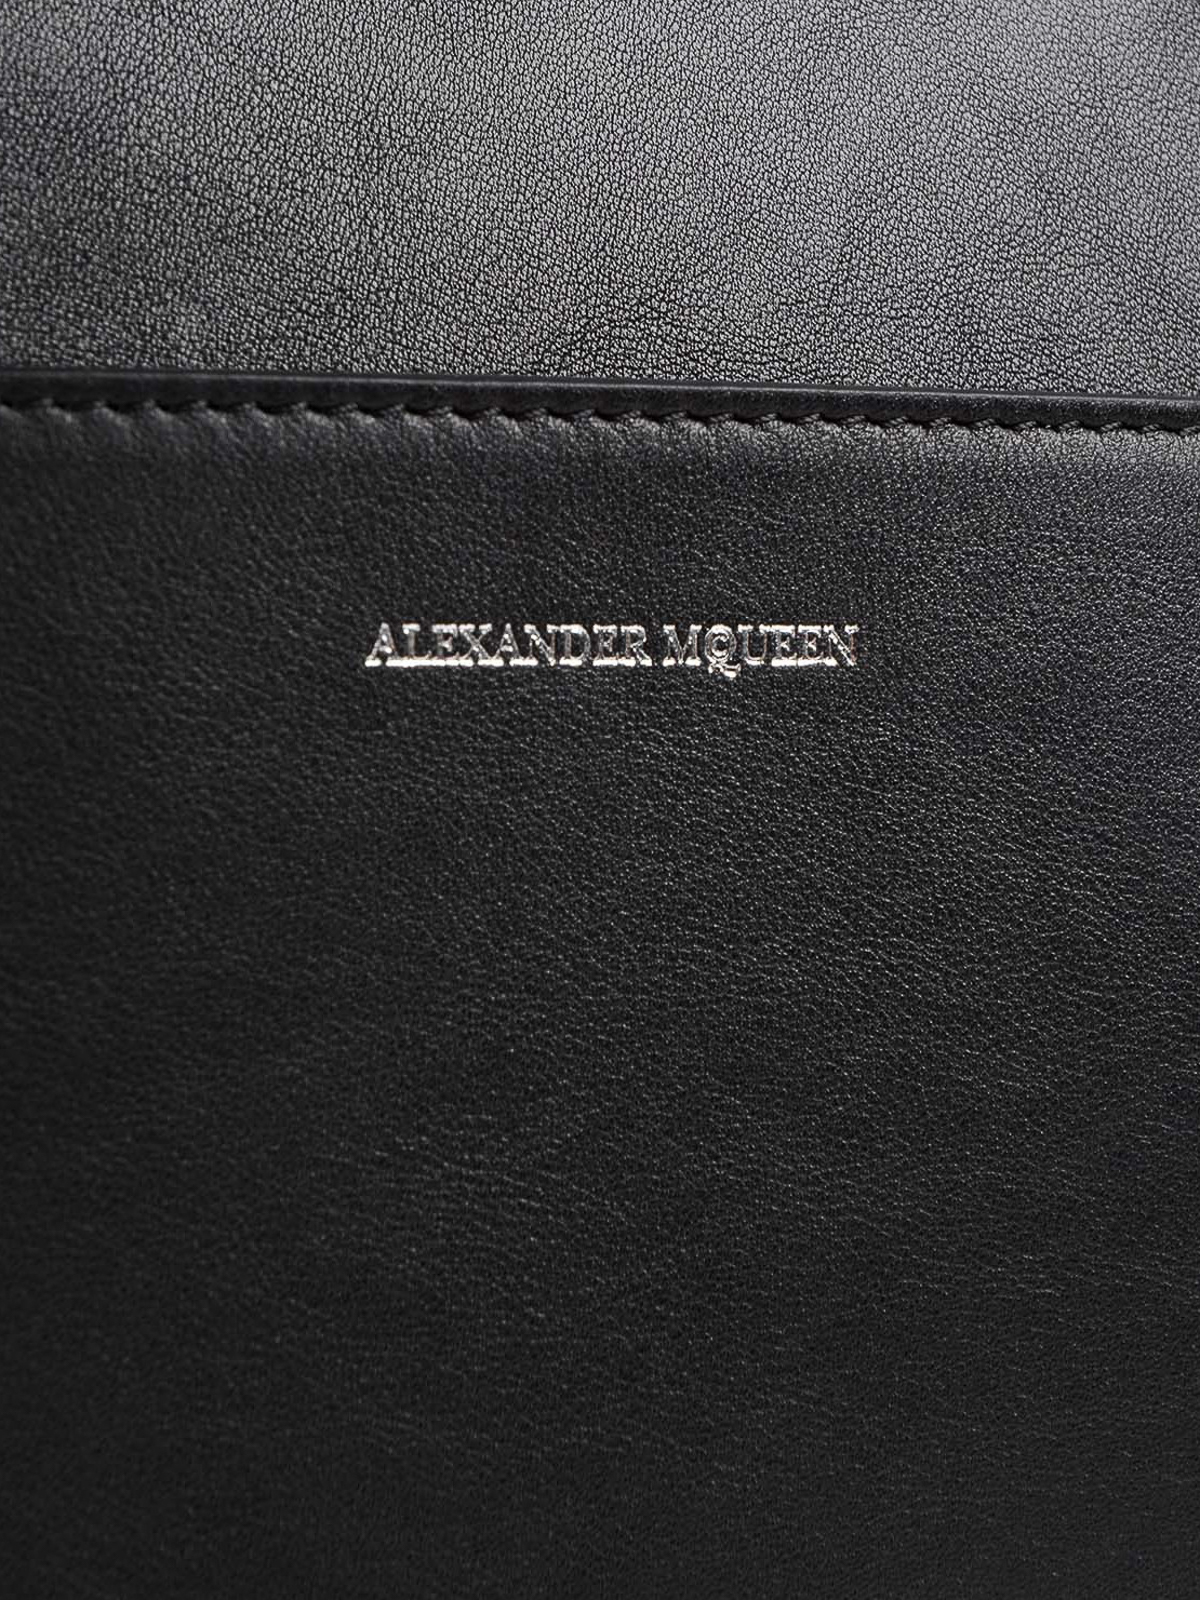 alexander mcqueen laptop bag